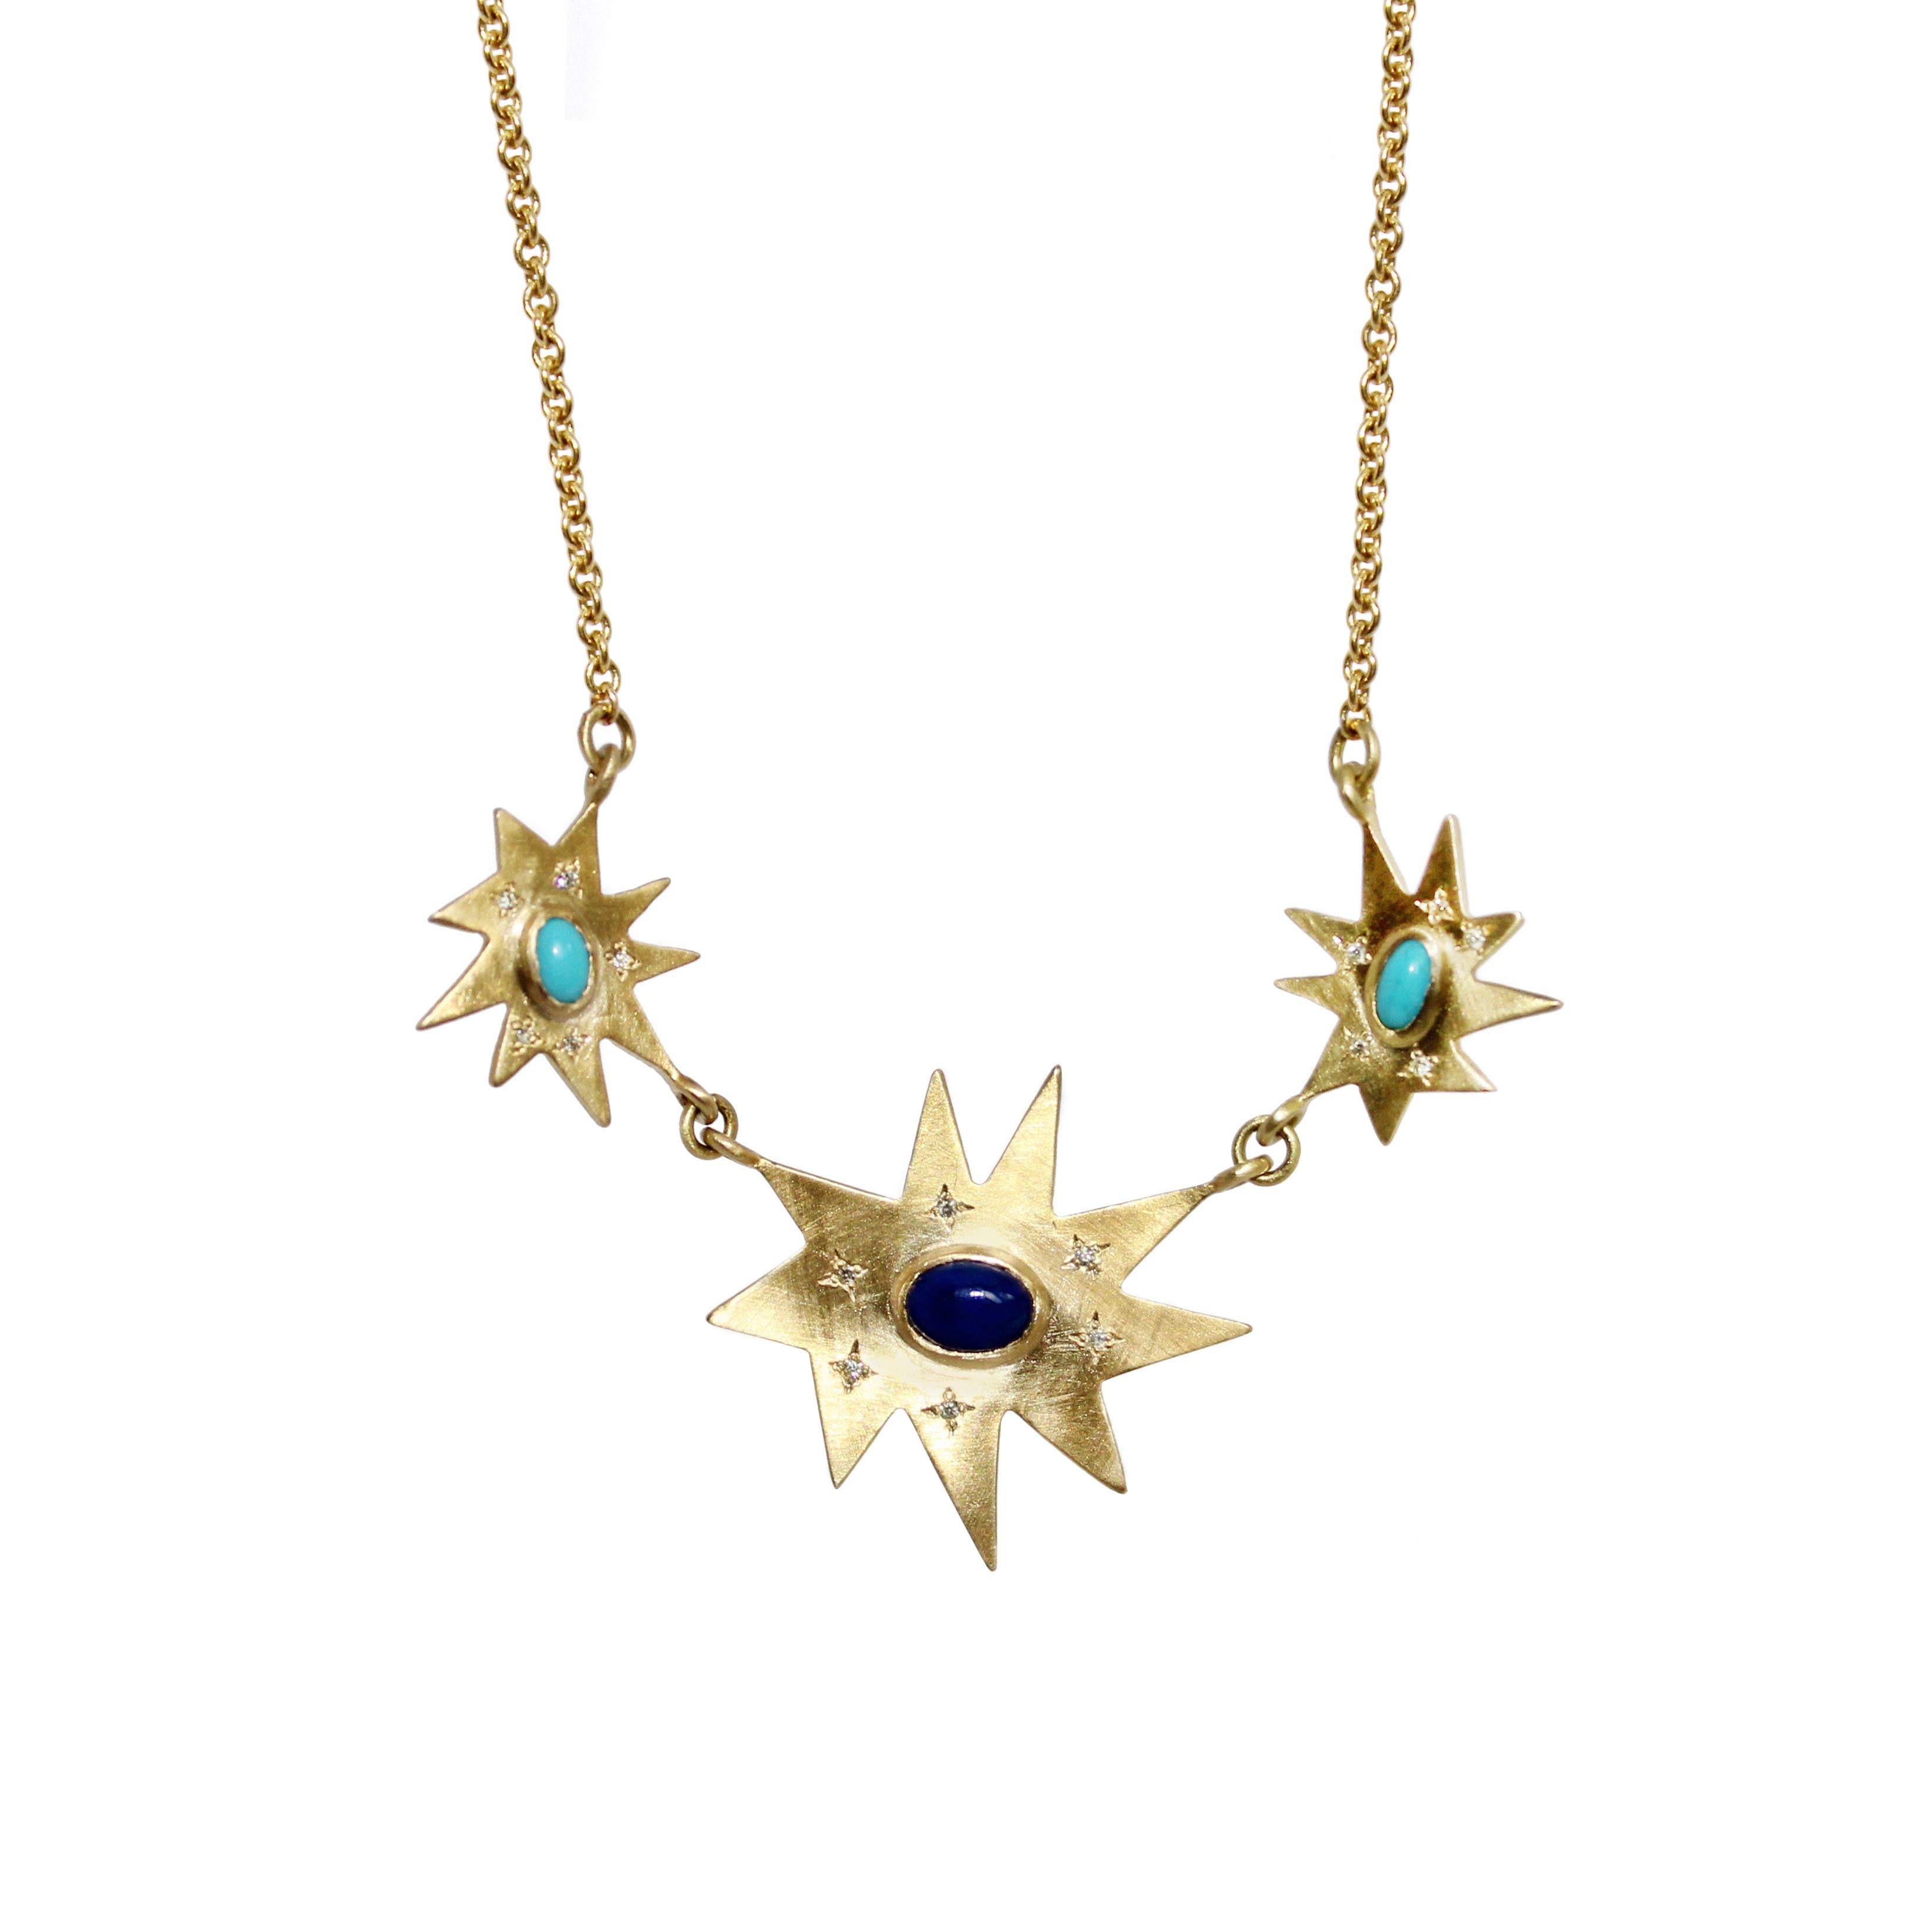 Emily Kuvin, collier fantaisie en or, diamants, lapis et turquoise